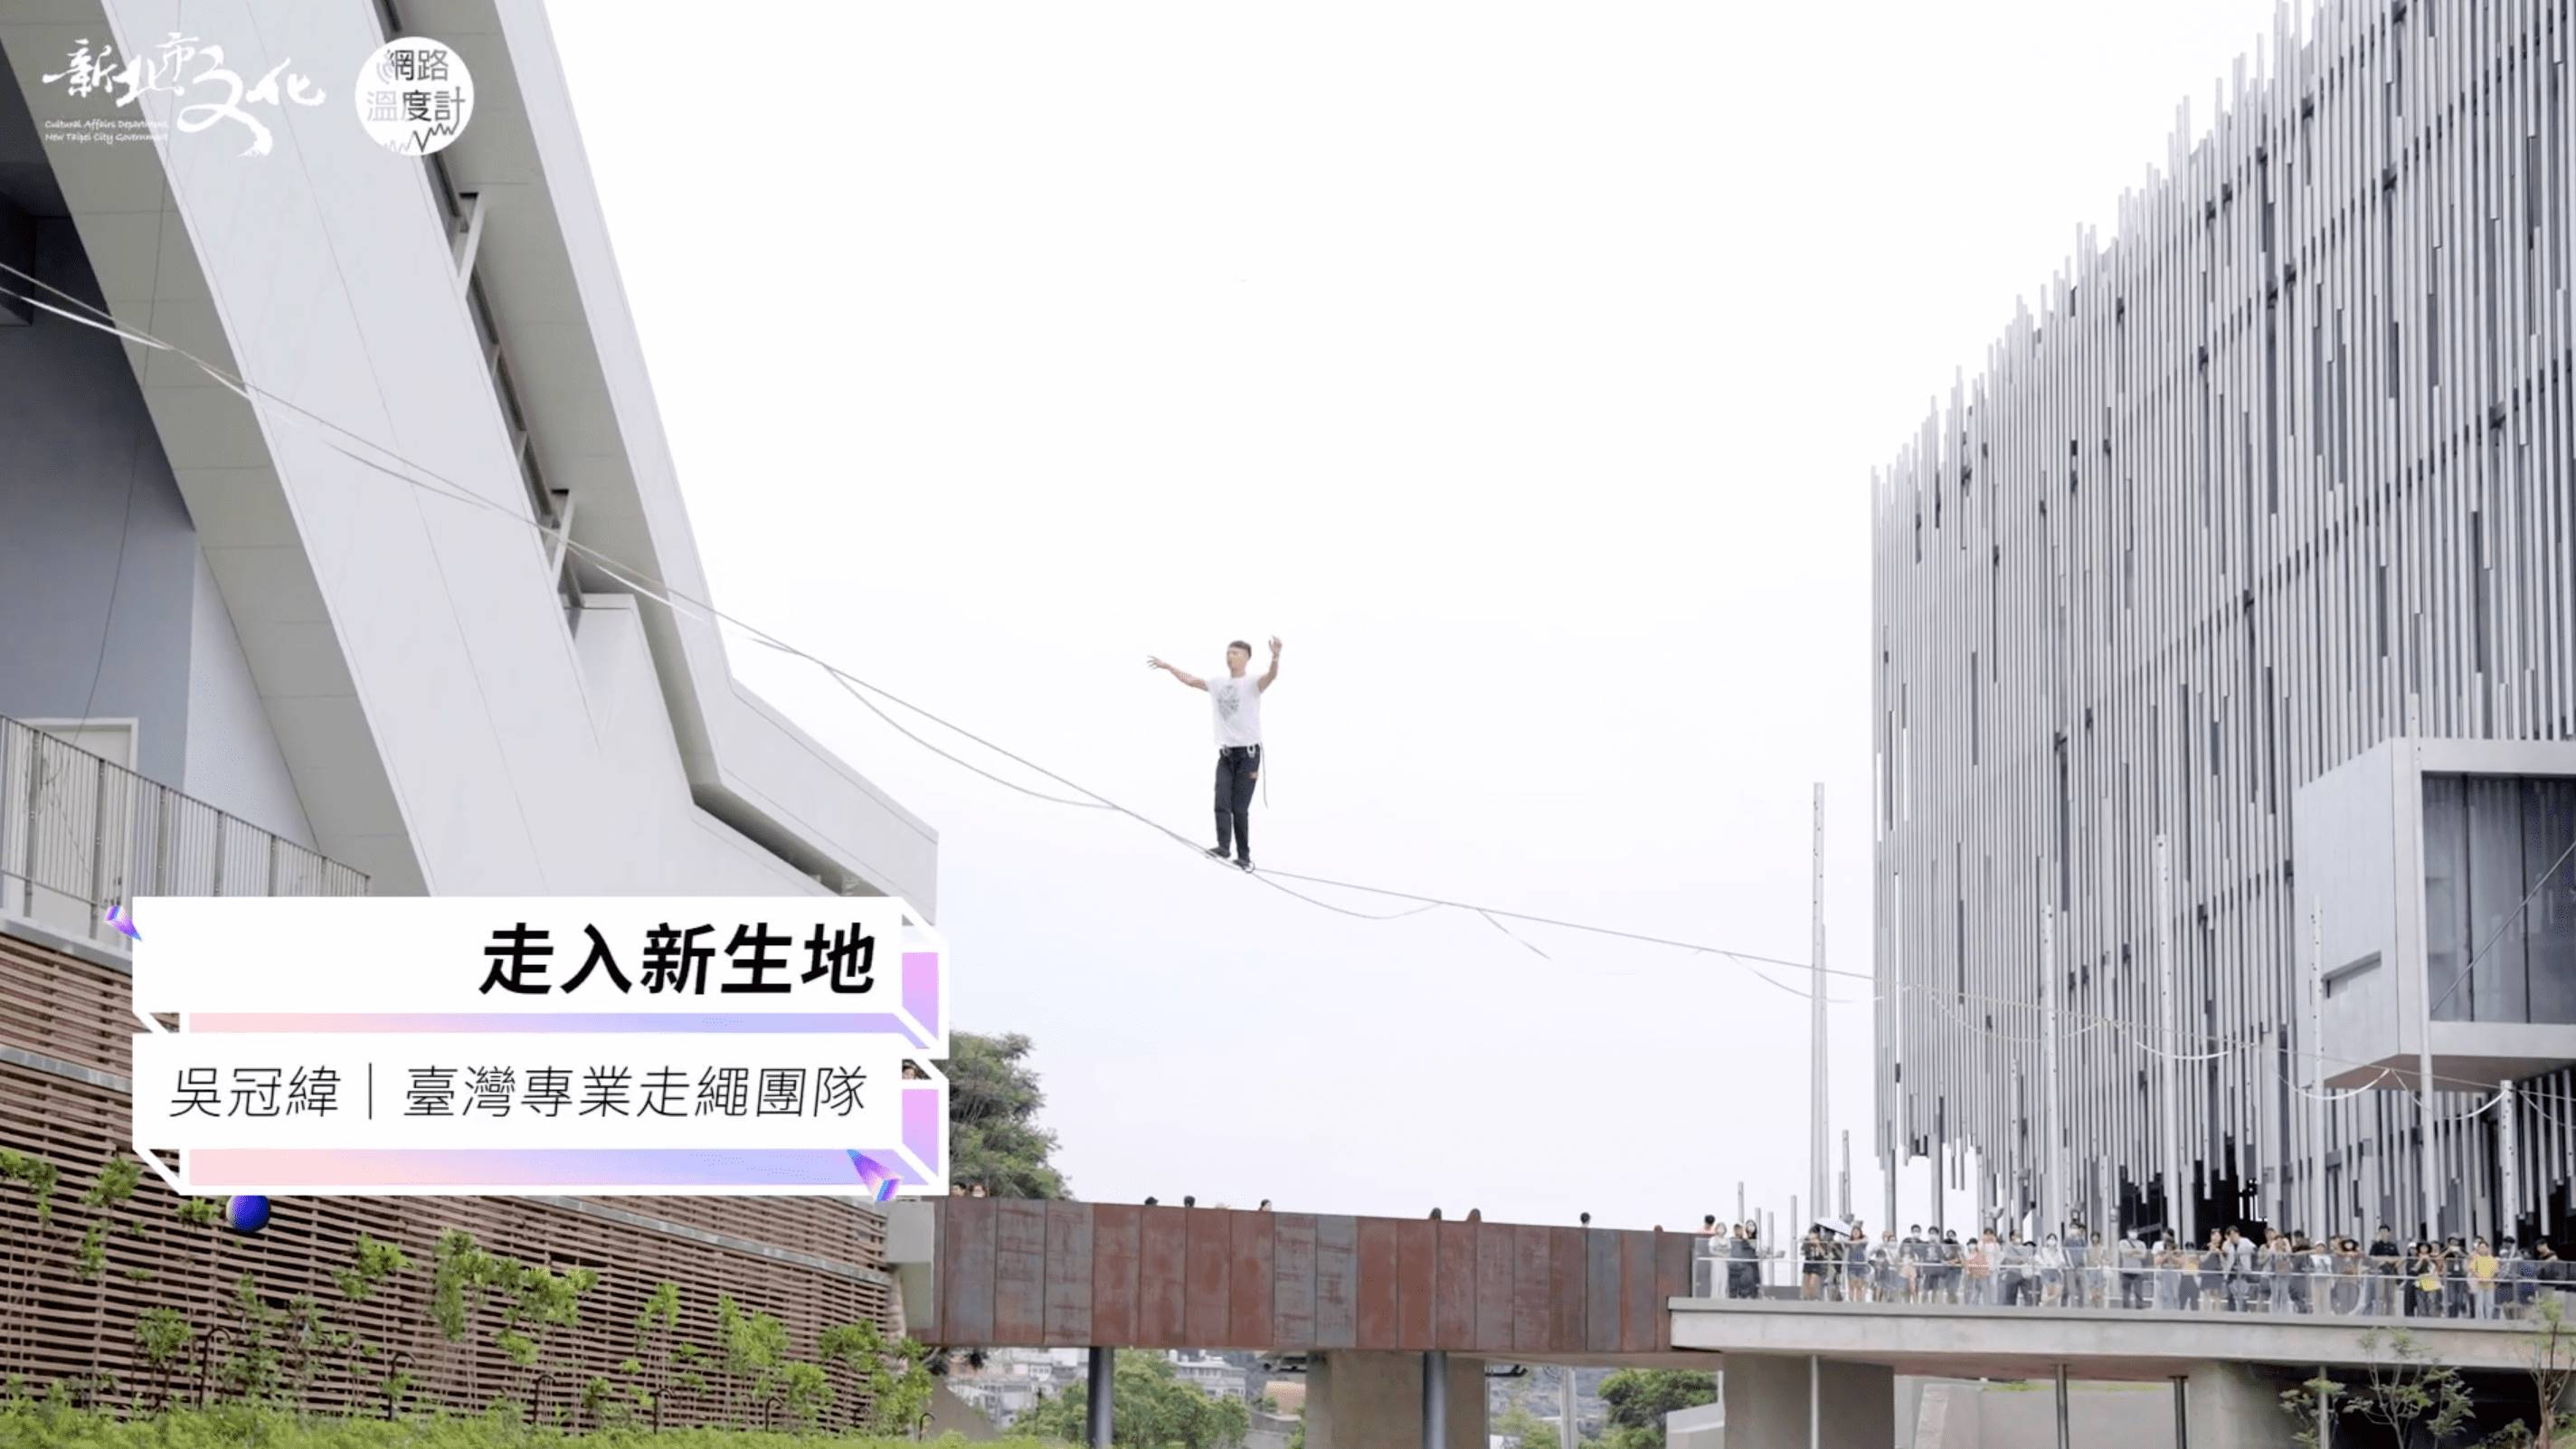 新北市城市藝術節台灣專業走繩團隊吳冠緯「走入新生地」走繩表演。